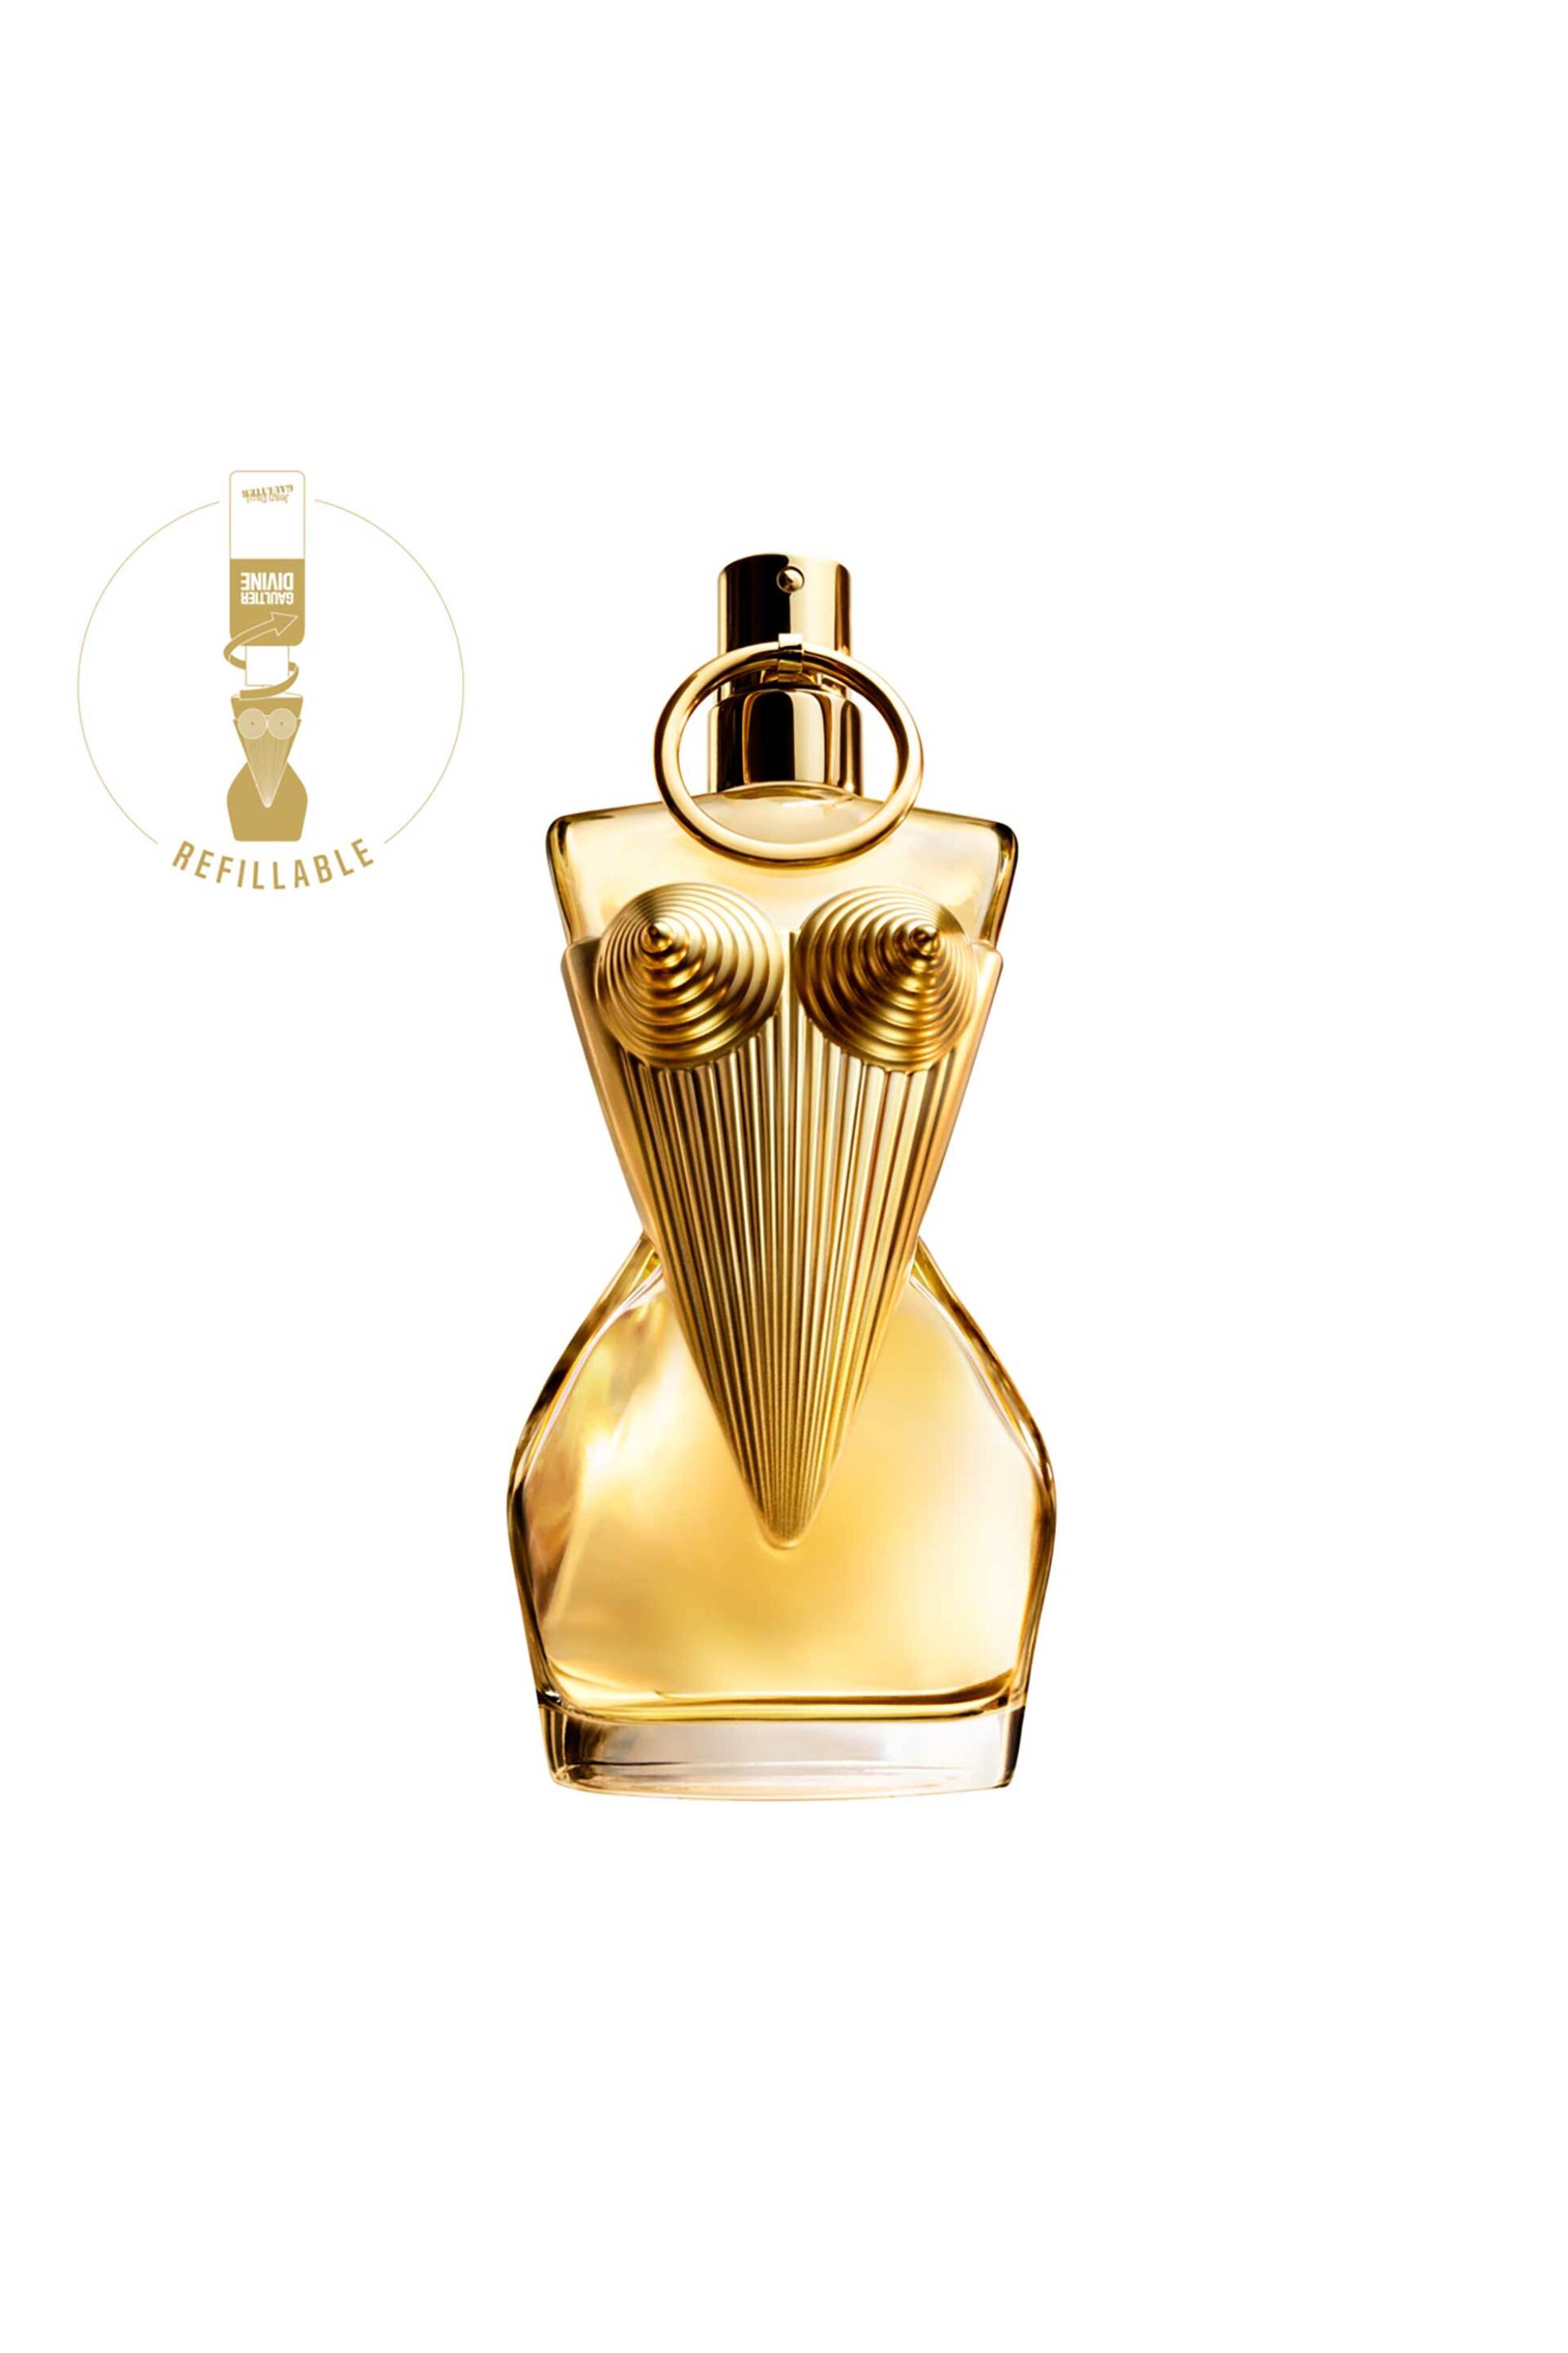 Ομορφιά > ΑΡΩΜΑΤΑ > Γυναικεία Αρώματα > Eau de Parfum - Parfum Jean Paul Gaultier - Gaultier Divine Eau de Parfum - 8571050259